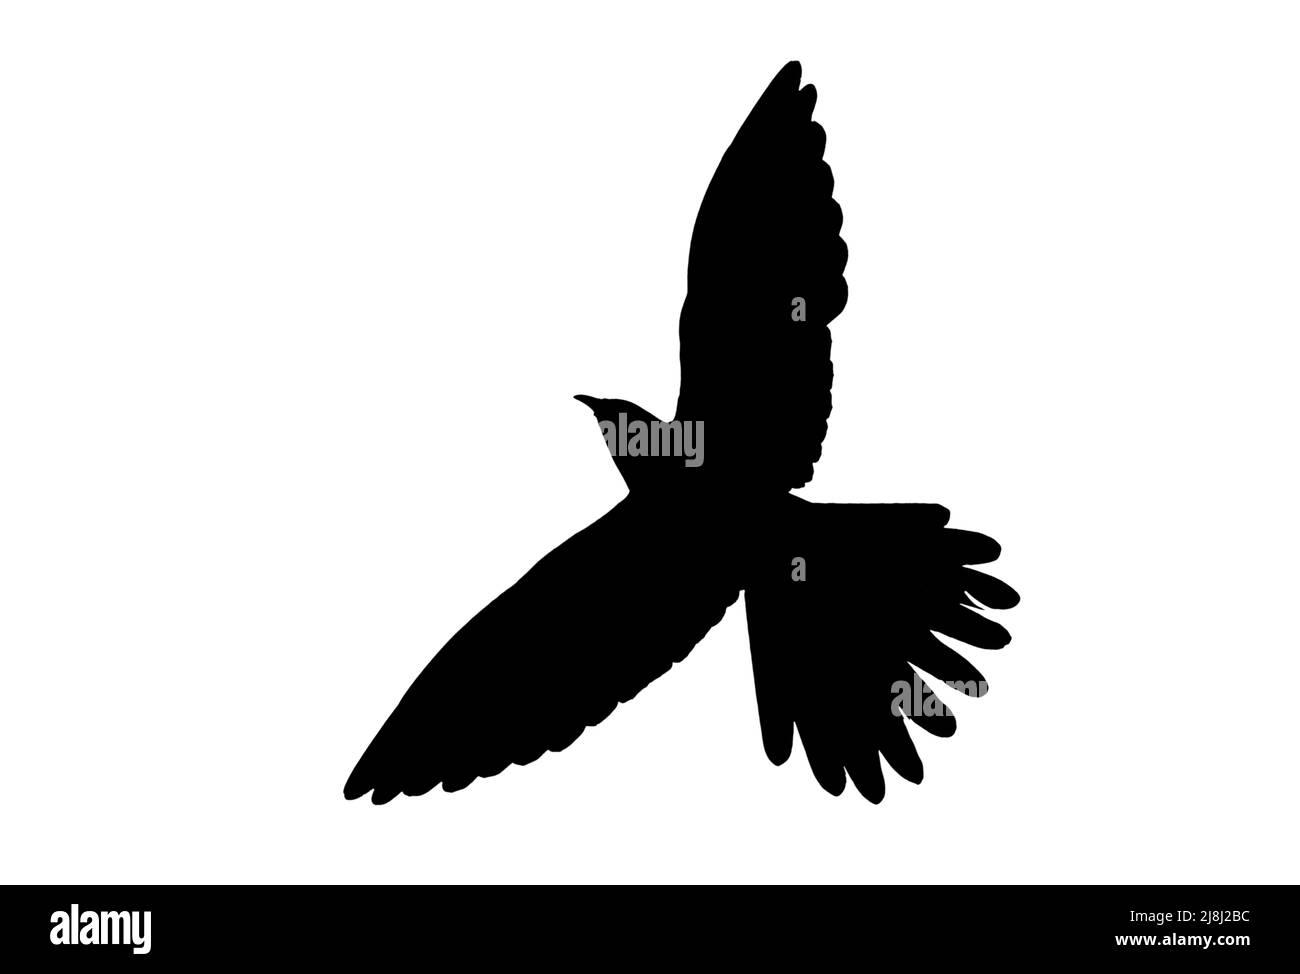 Silhouette eines Kuckucks (Cuculus canorus) im Flug, umrissen vor weißem Hintergrund, um Flügel, Kopf- und Schwanzformen zu zeigen Stockfoto